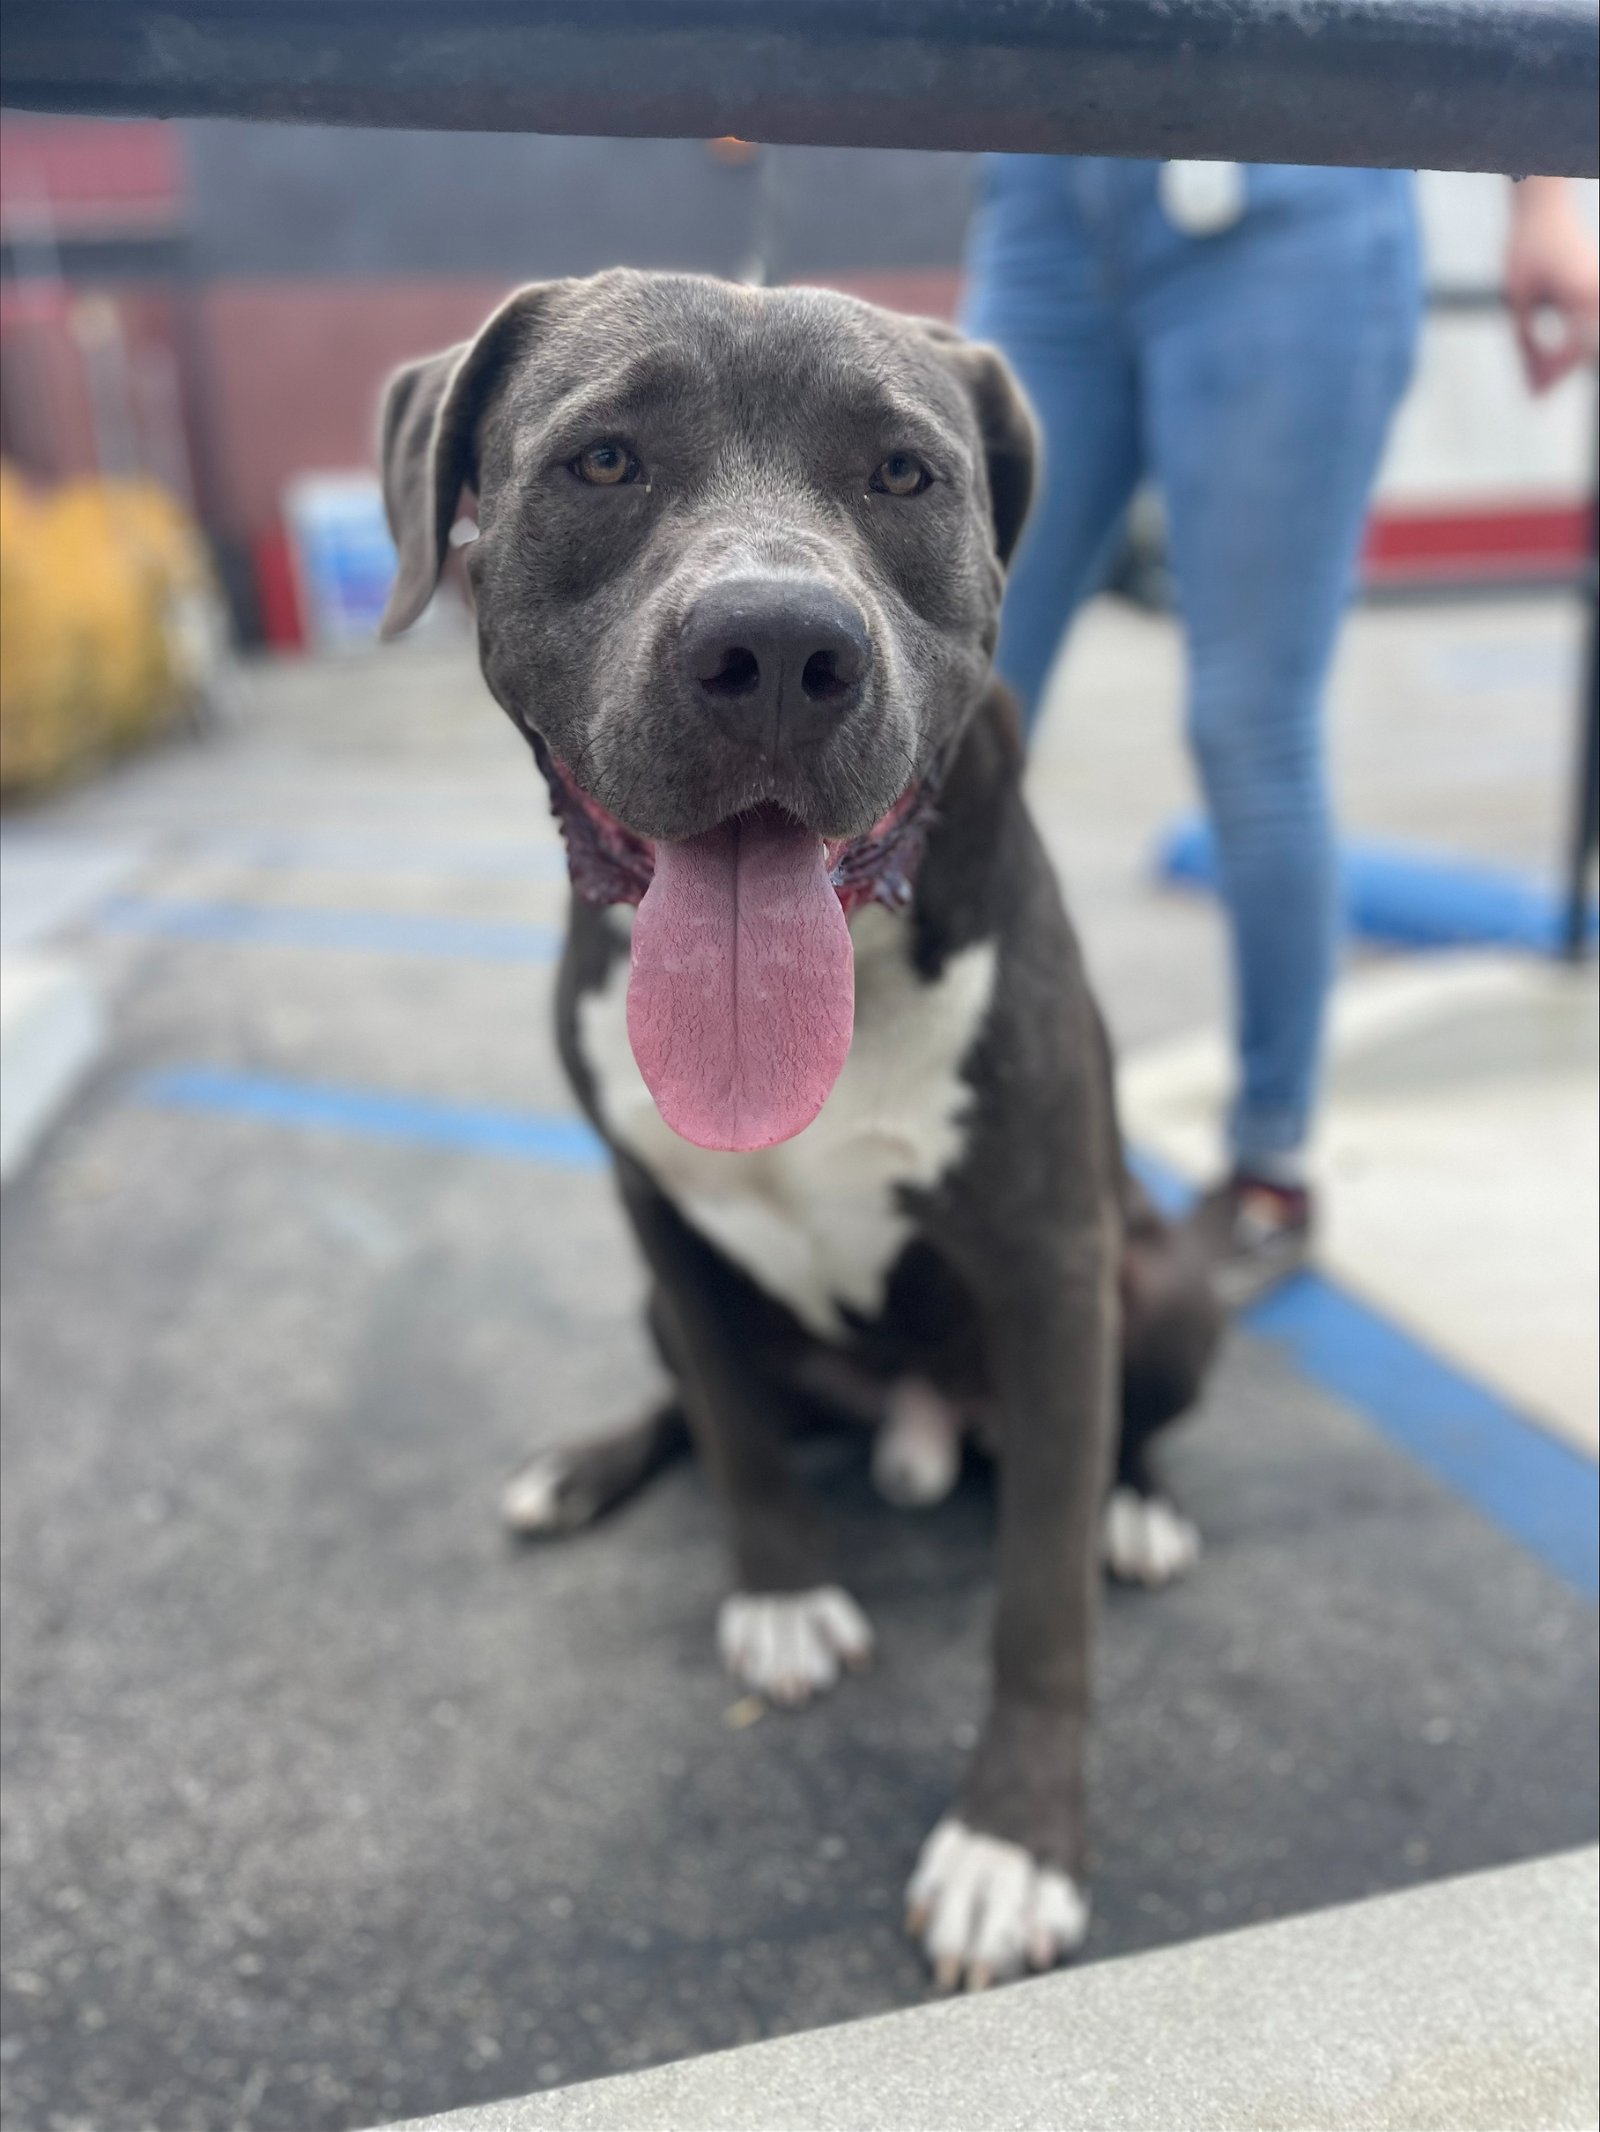 adoptable Dog in Santa Monica, CA named Bubba